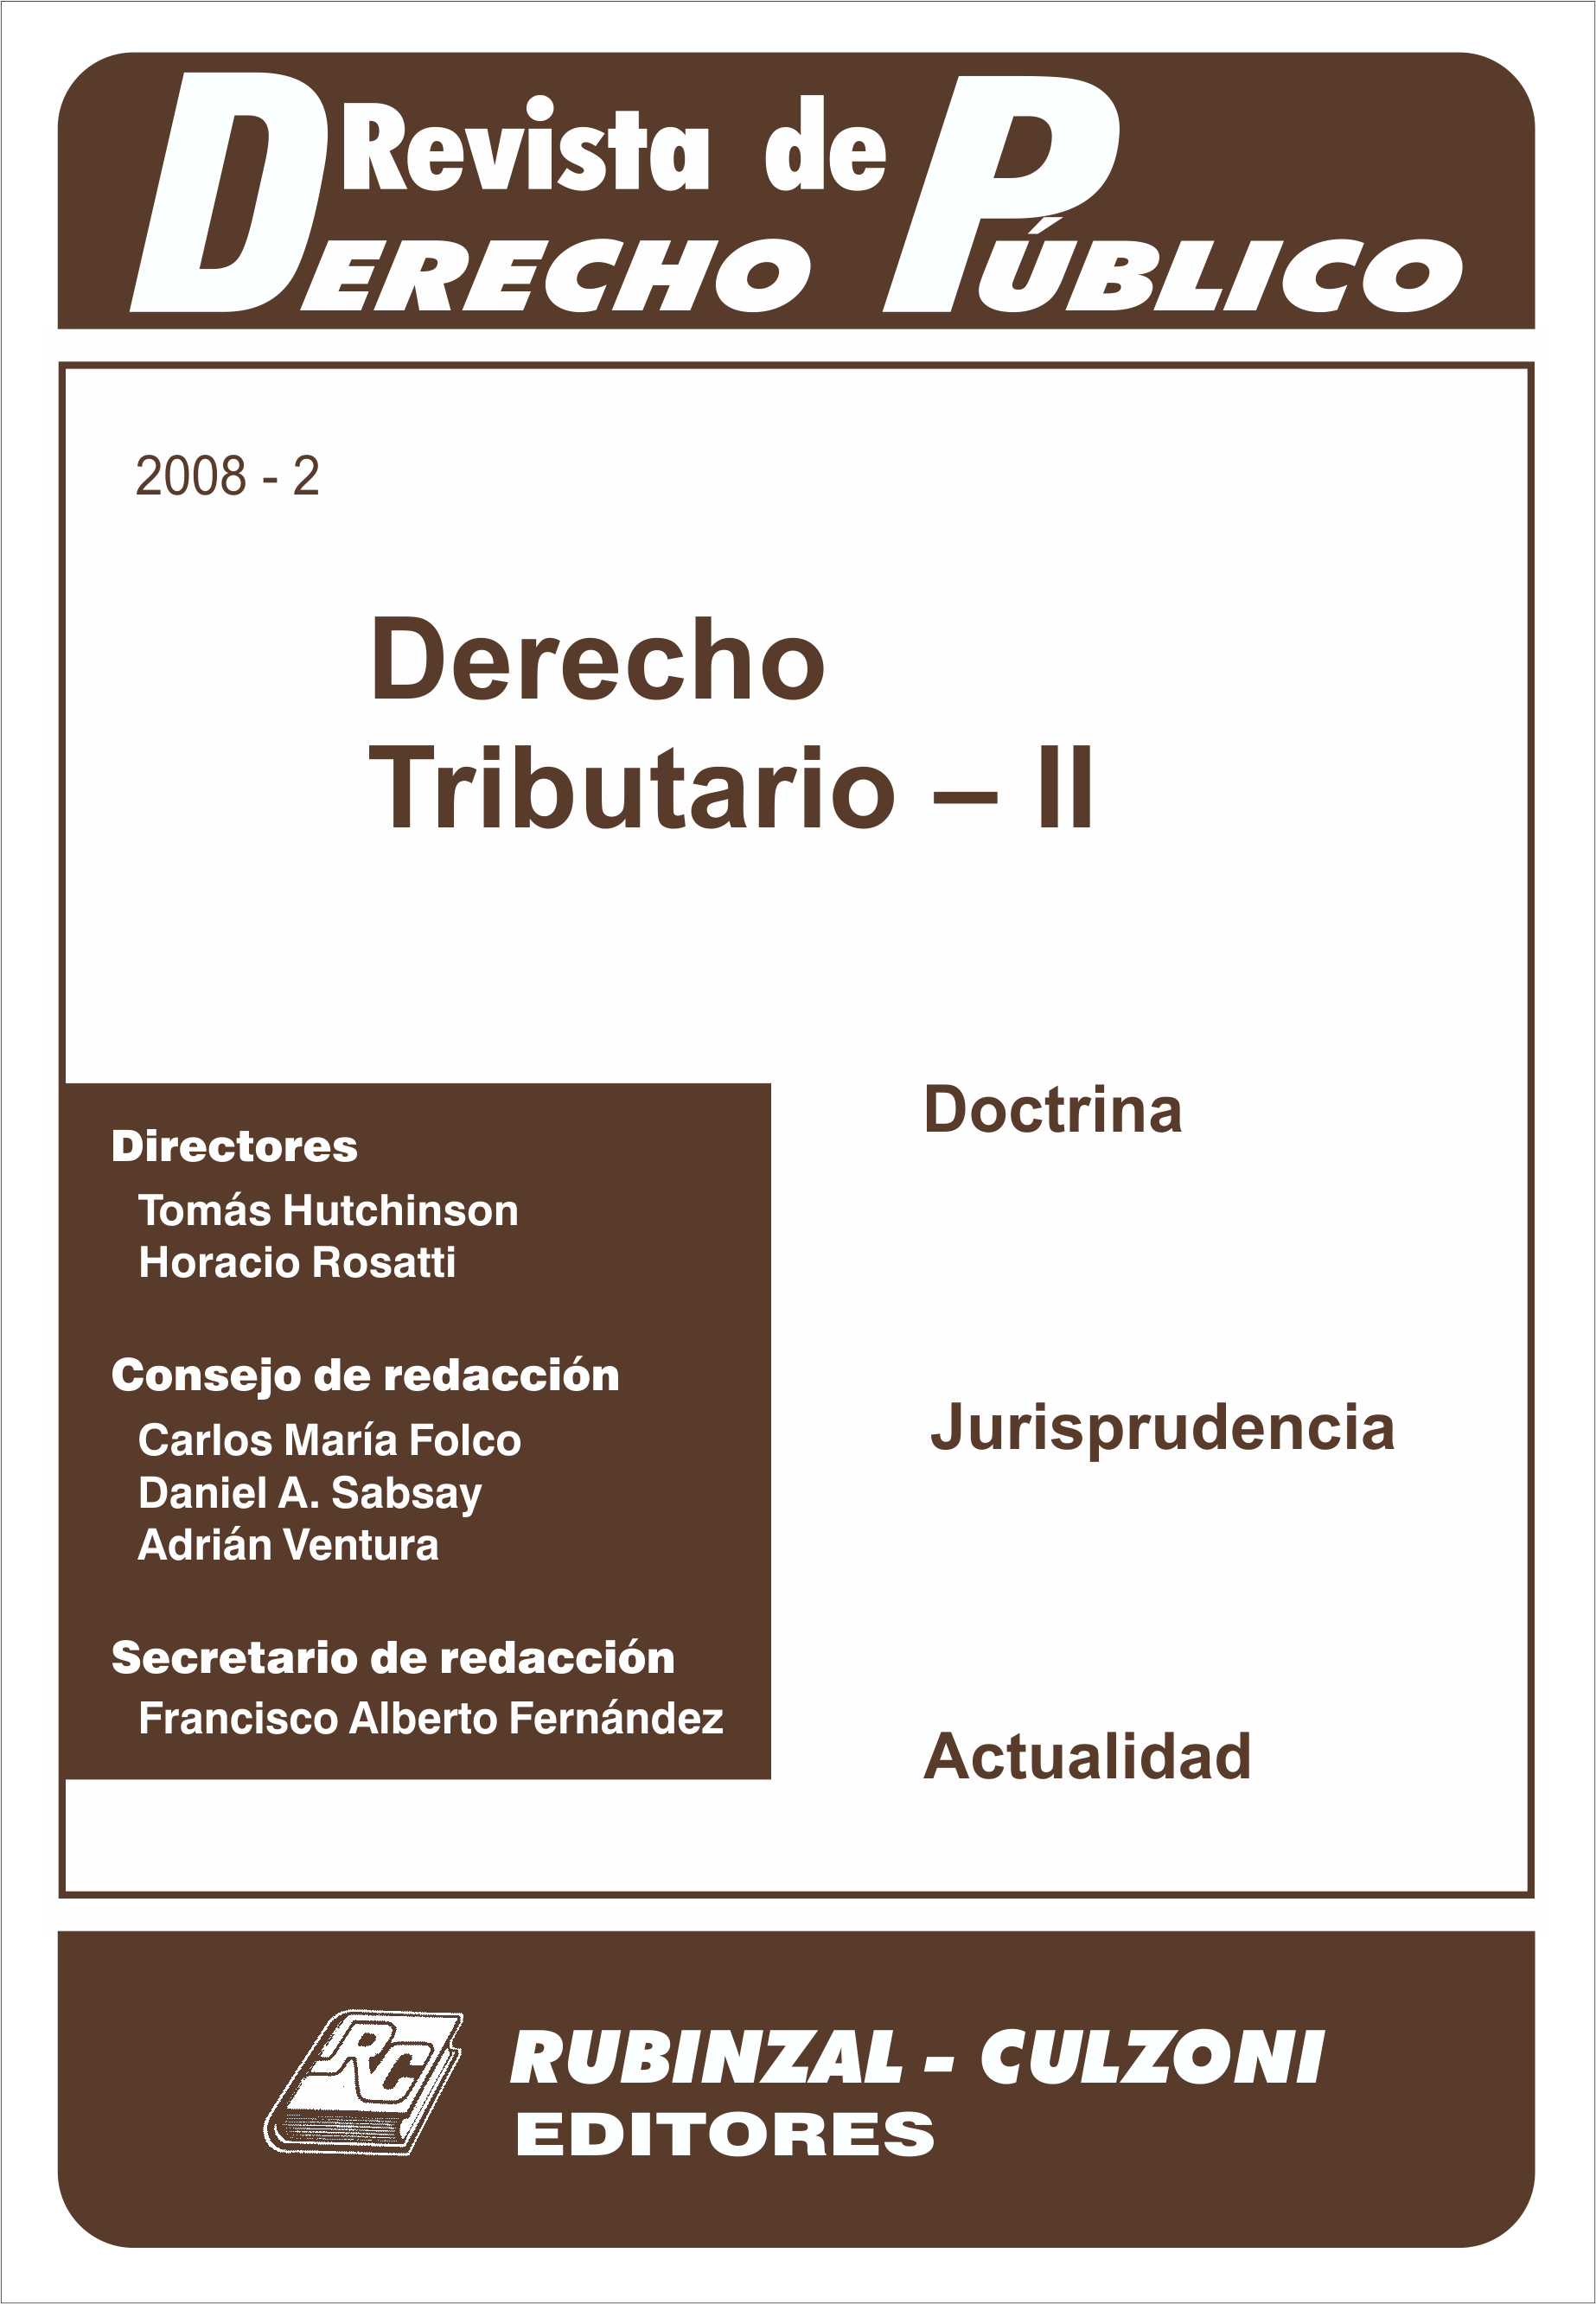 Revista de Derecho Público - Derecho Tributario - II